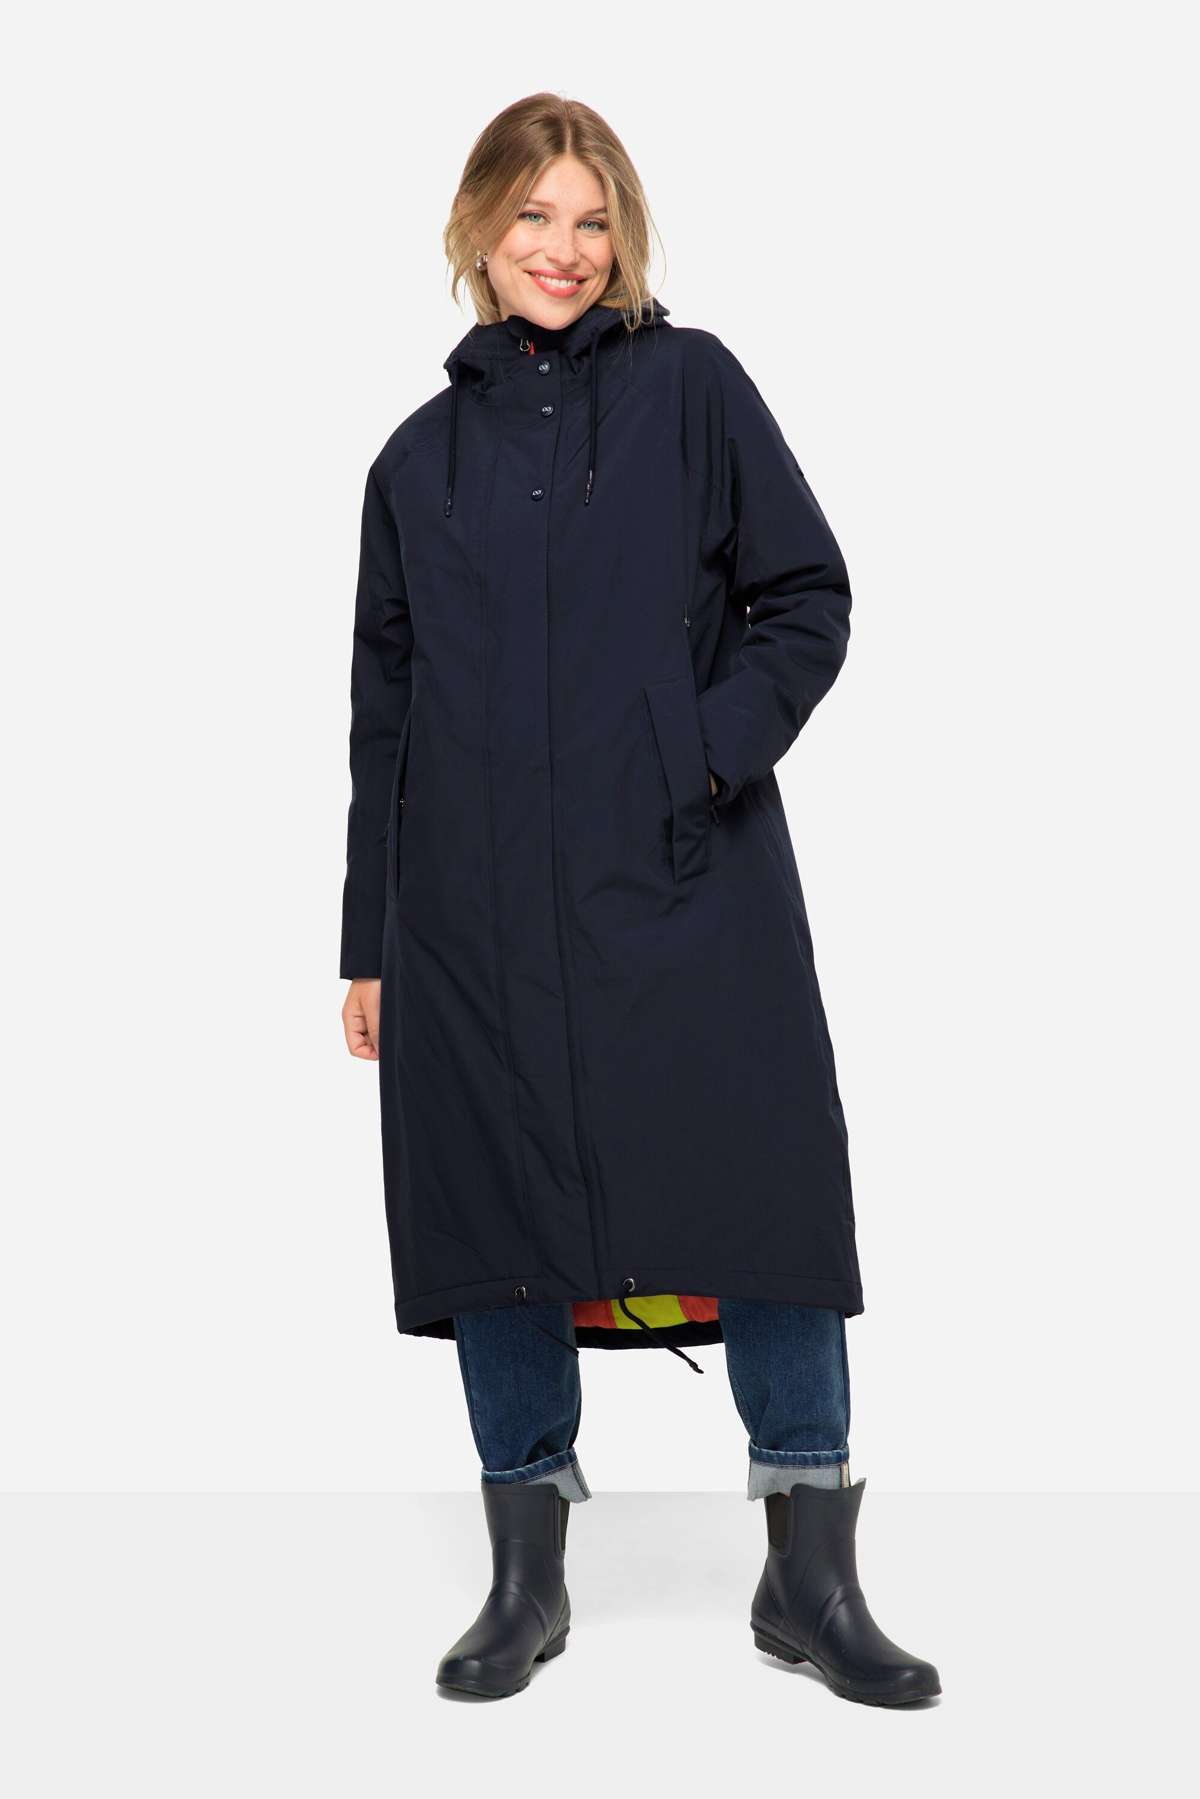 Функциональная куртка, функциональное пальто, капюшон, двусторонняя молния.